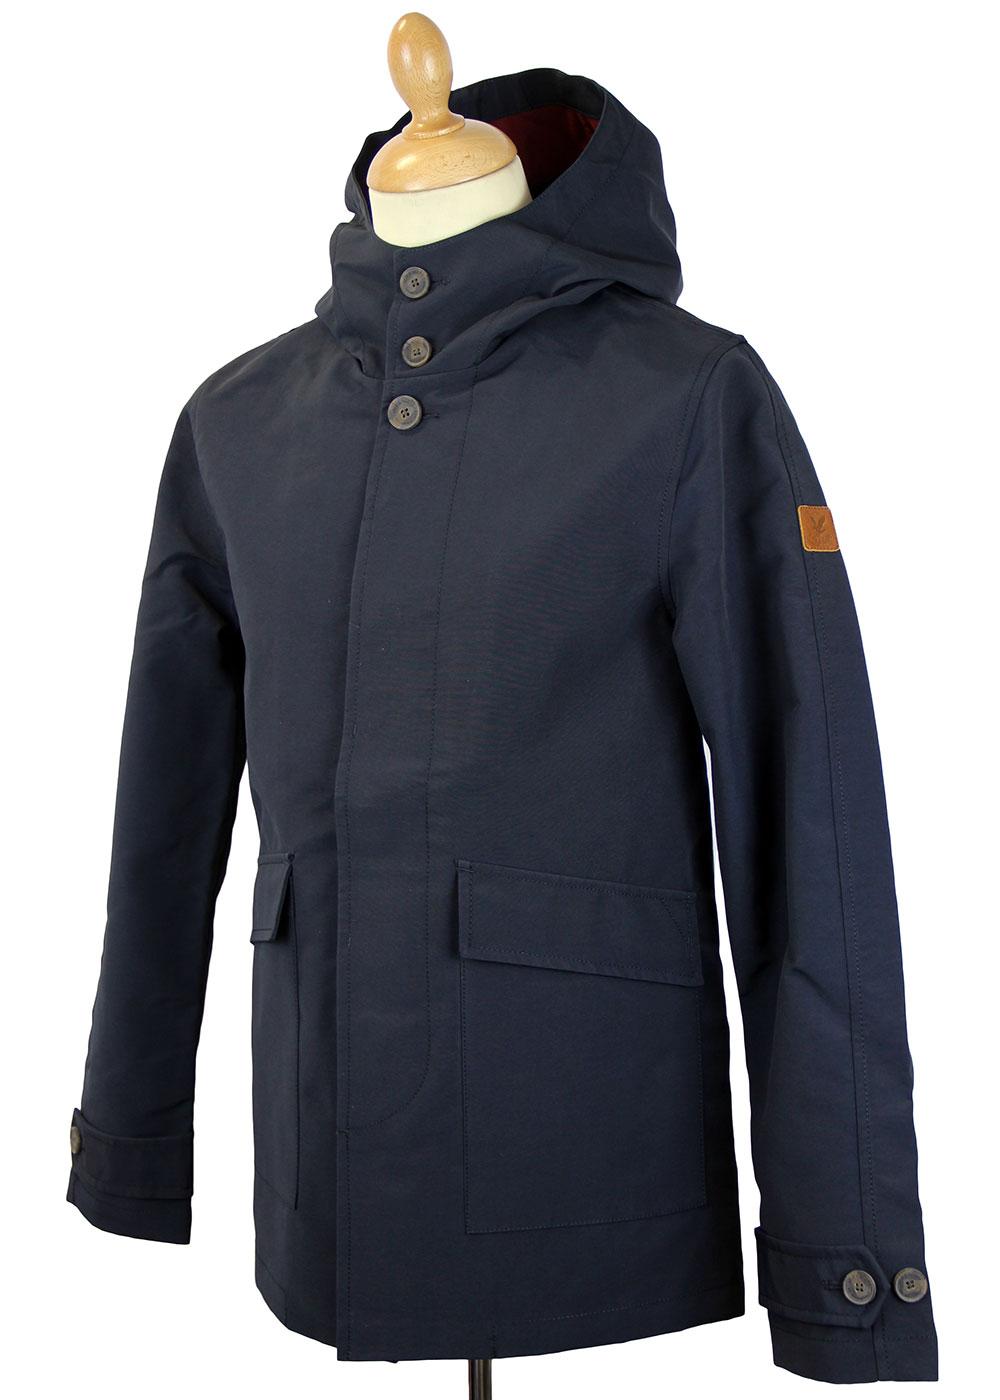 LYLE & SCOTT Retro Mod Twill Hooded Parka Jacket in Navy